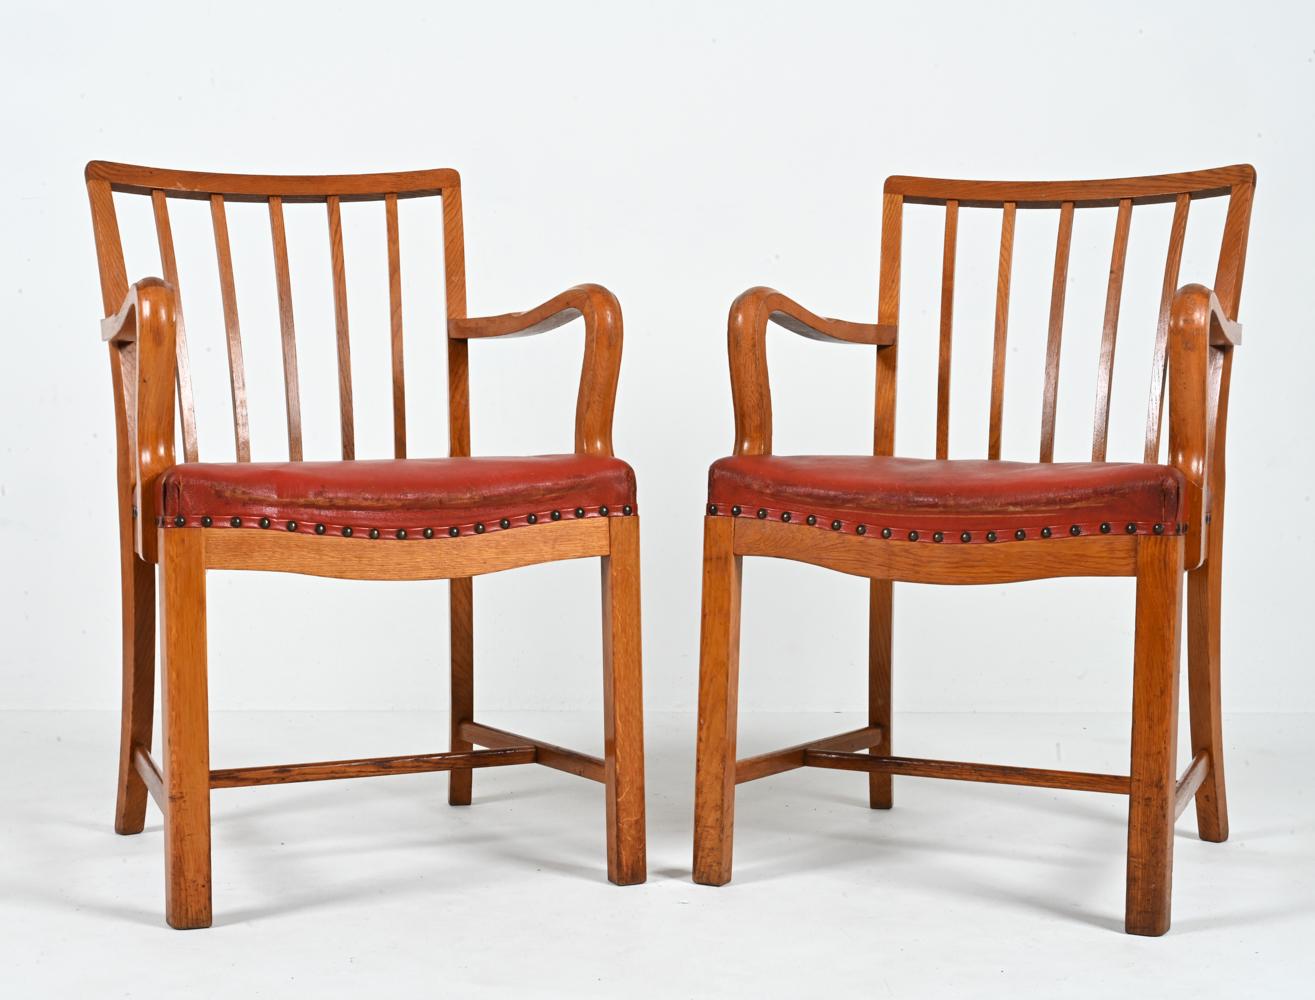 Voici une trouvaille extraordinaire pour le collectionneur averti - une paire rare de fauteuils danois du milieu du siècle attribués à Steens Eiler Rasmussen. Datant des années 1940-1950, ces chaises incarnent l'essence d'un design intemporel grâce